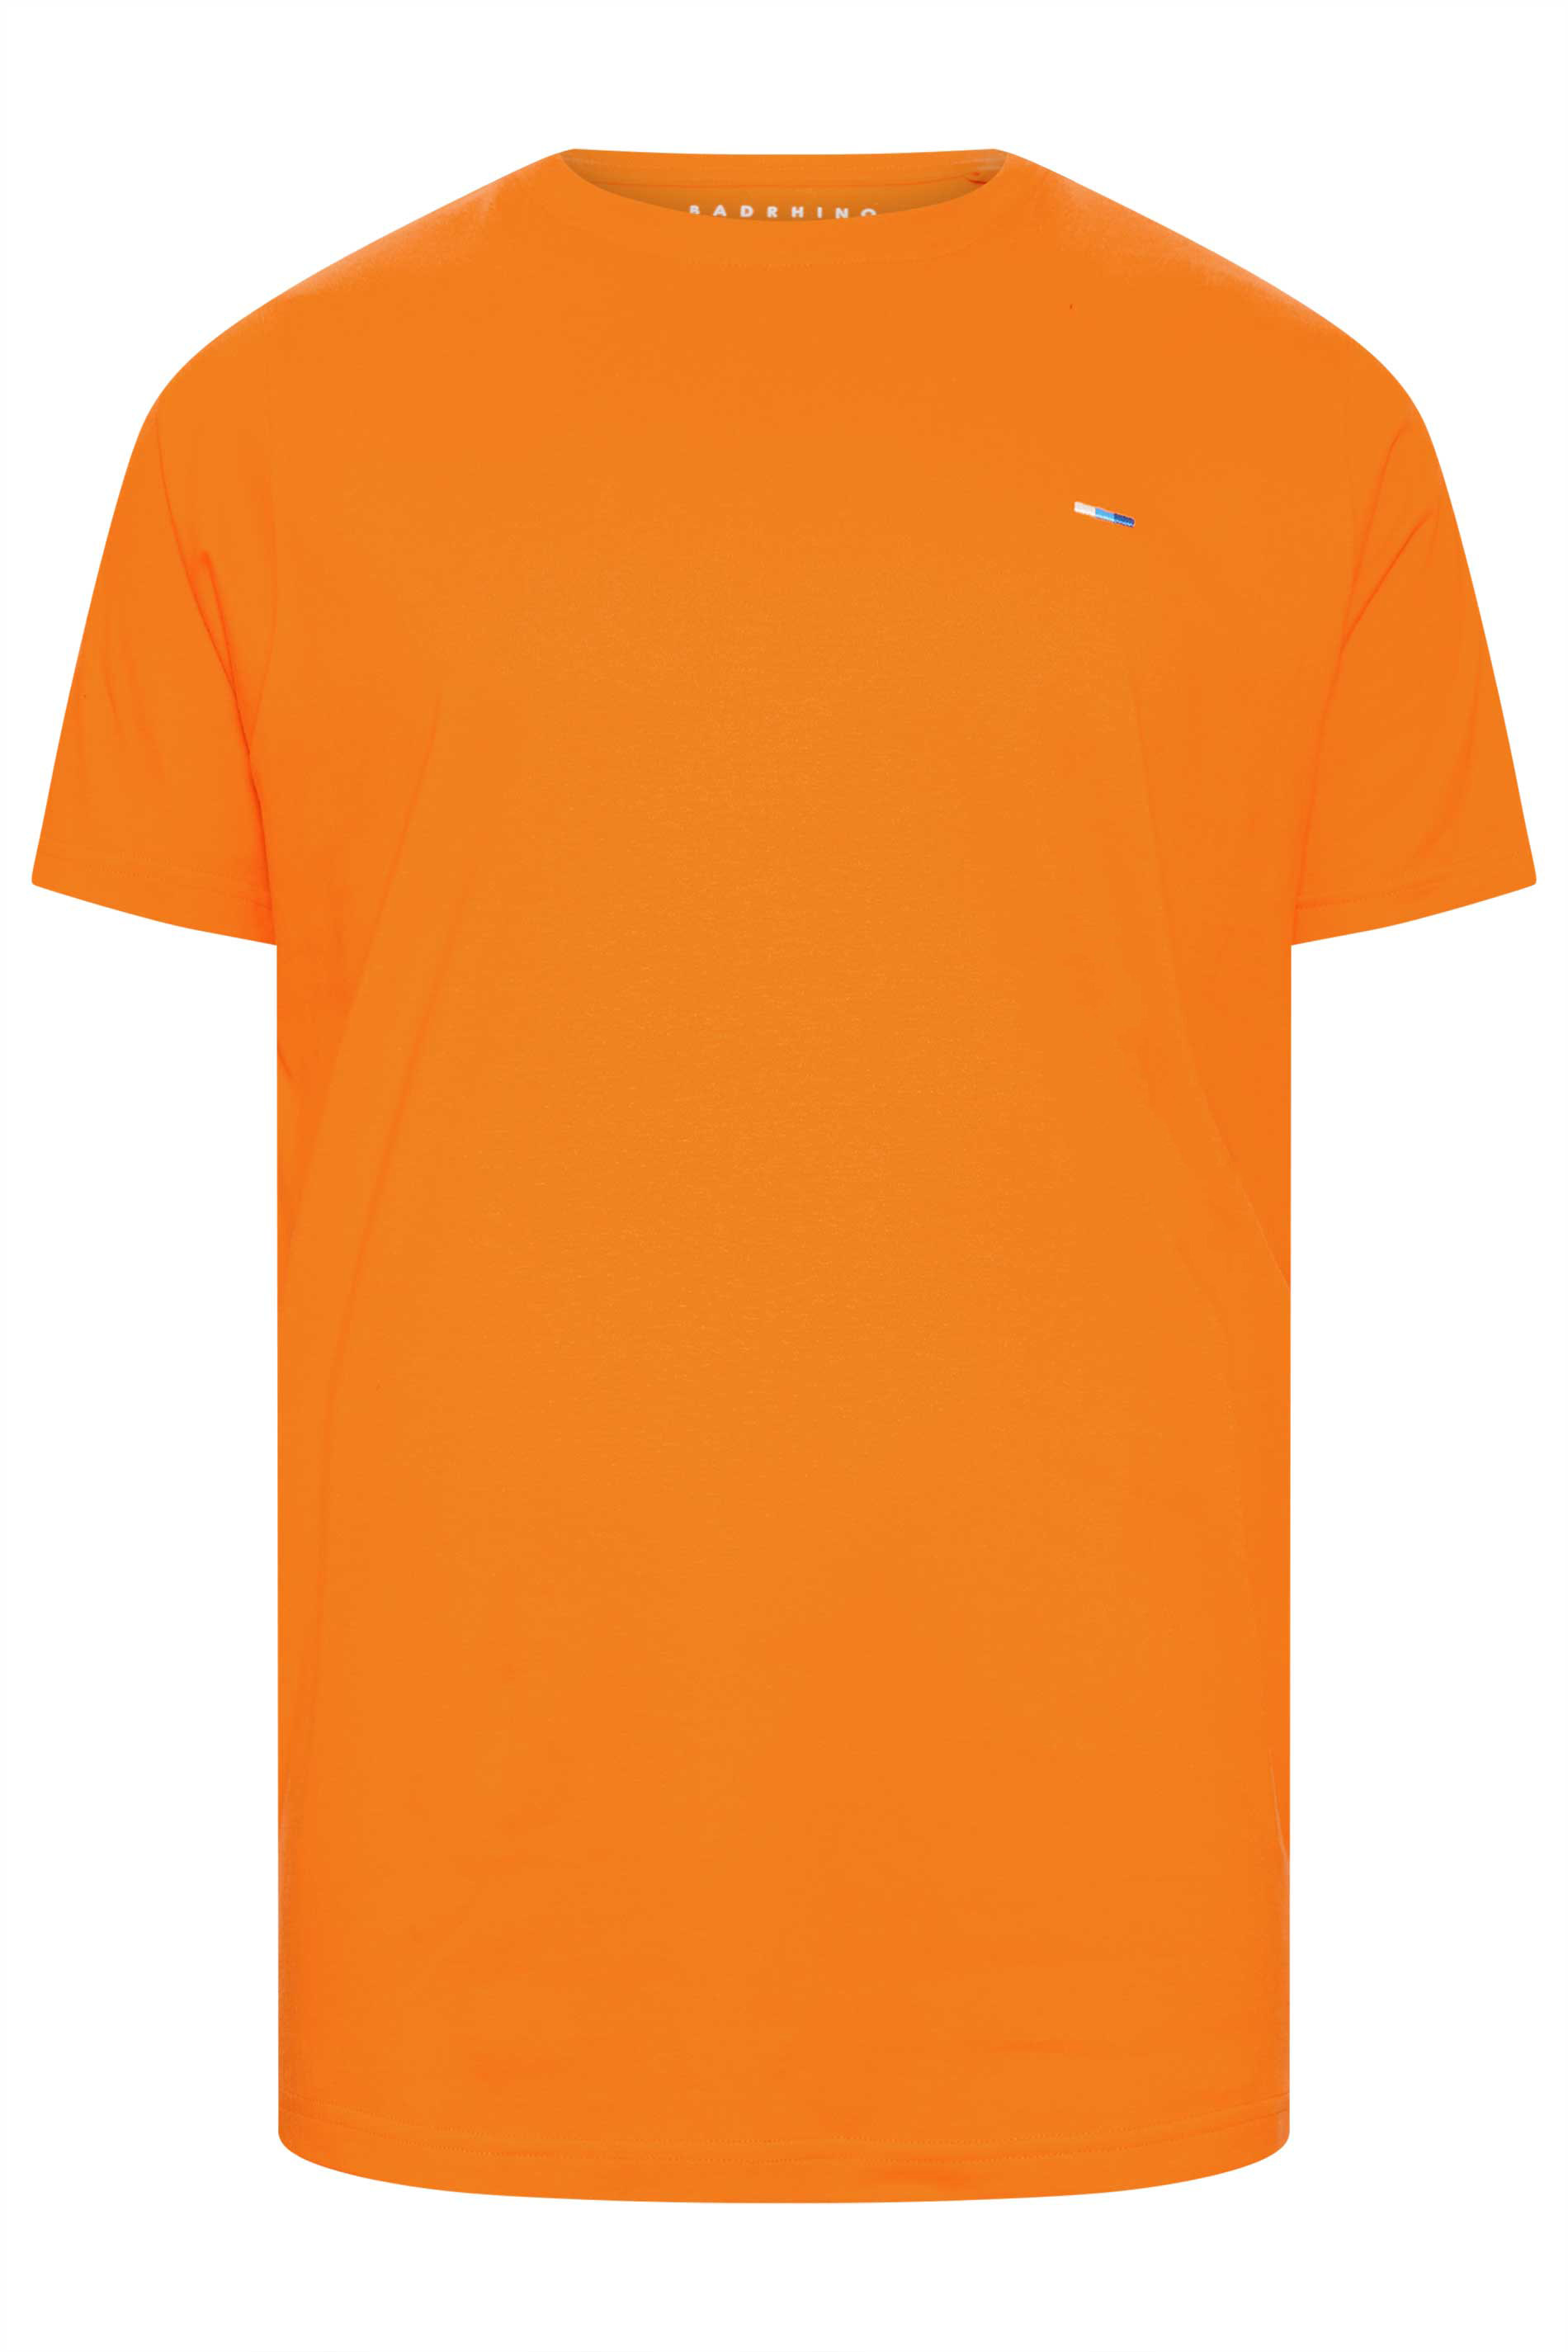 BadRhino Big & Tall Sun Orange Core T-Shirt | BadRhino 3